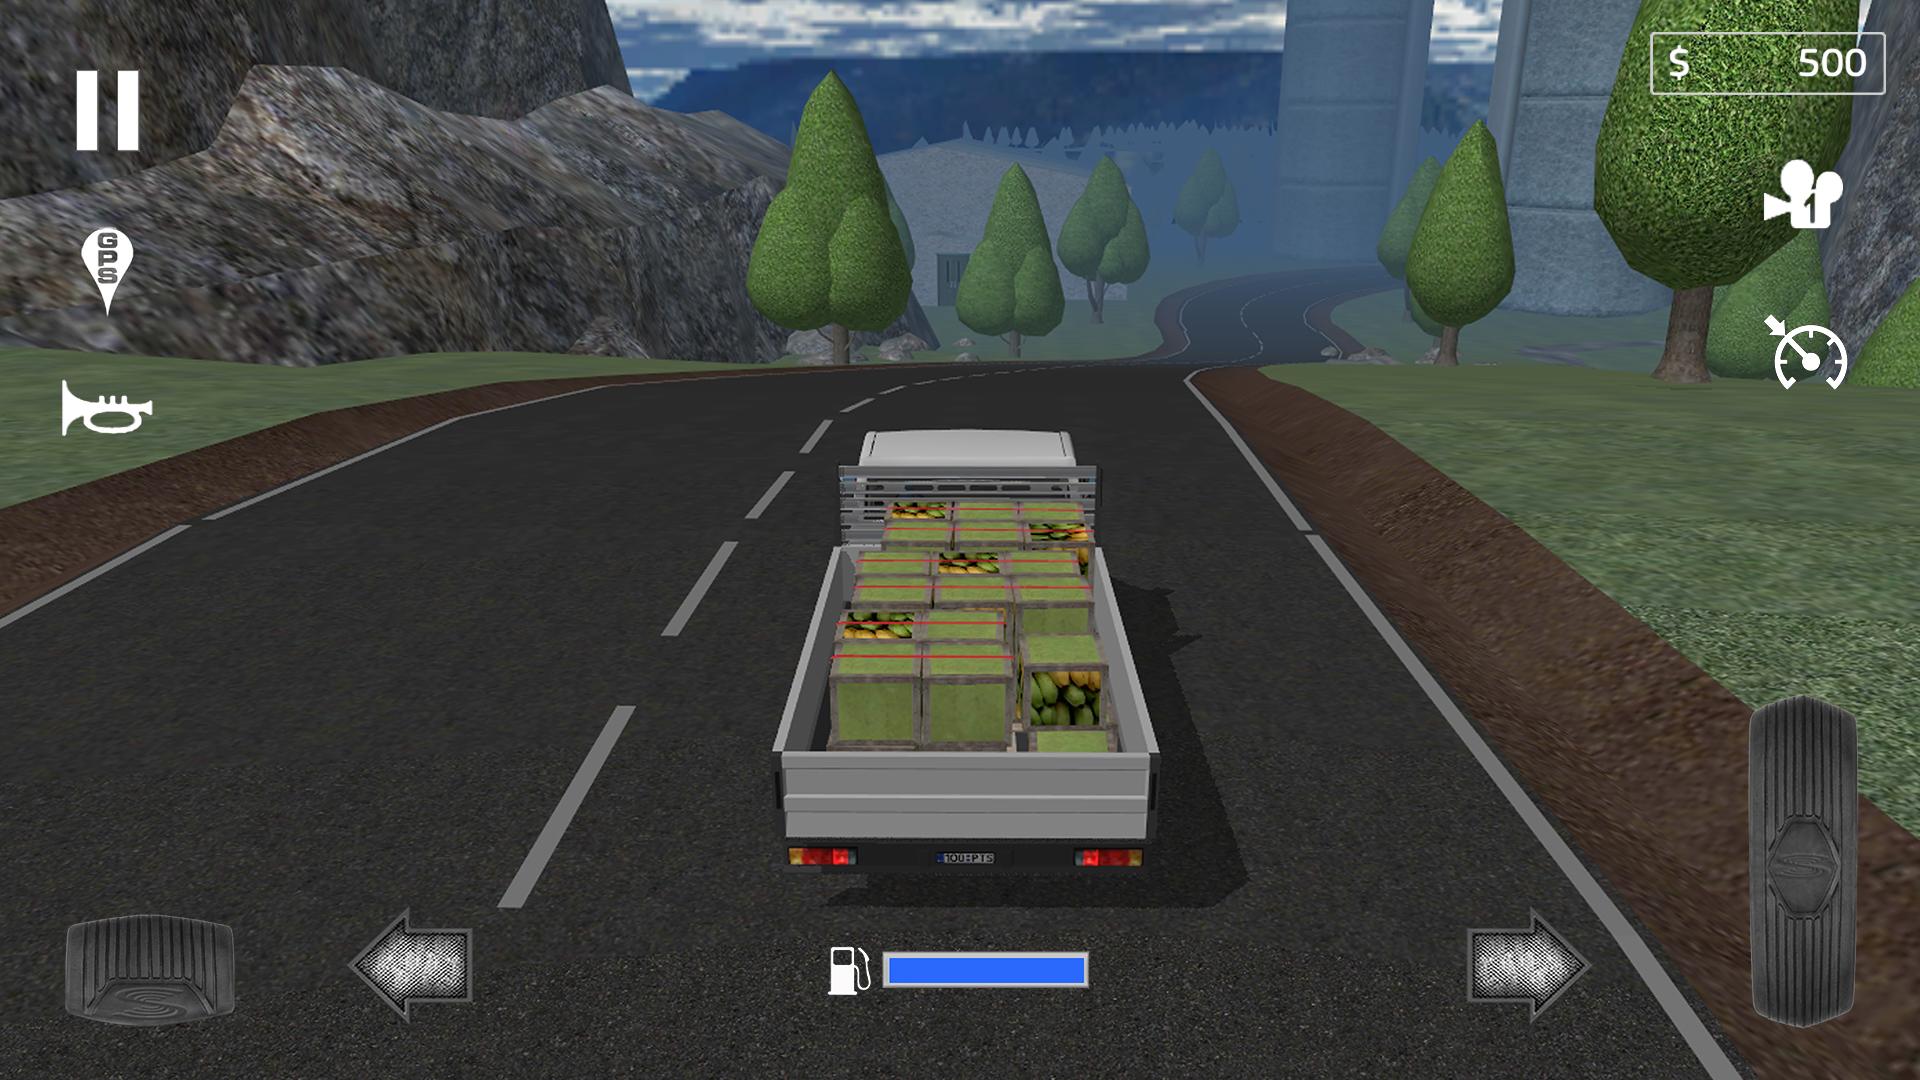 Симулятор карты играть. Симулятор дальнобойщика Cargo transport. Cargo transport Simulator1.13.1. Карго транспорт симулятор 2. Симулятор грузовика на андроид.